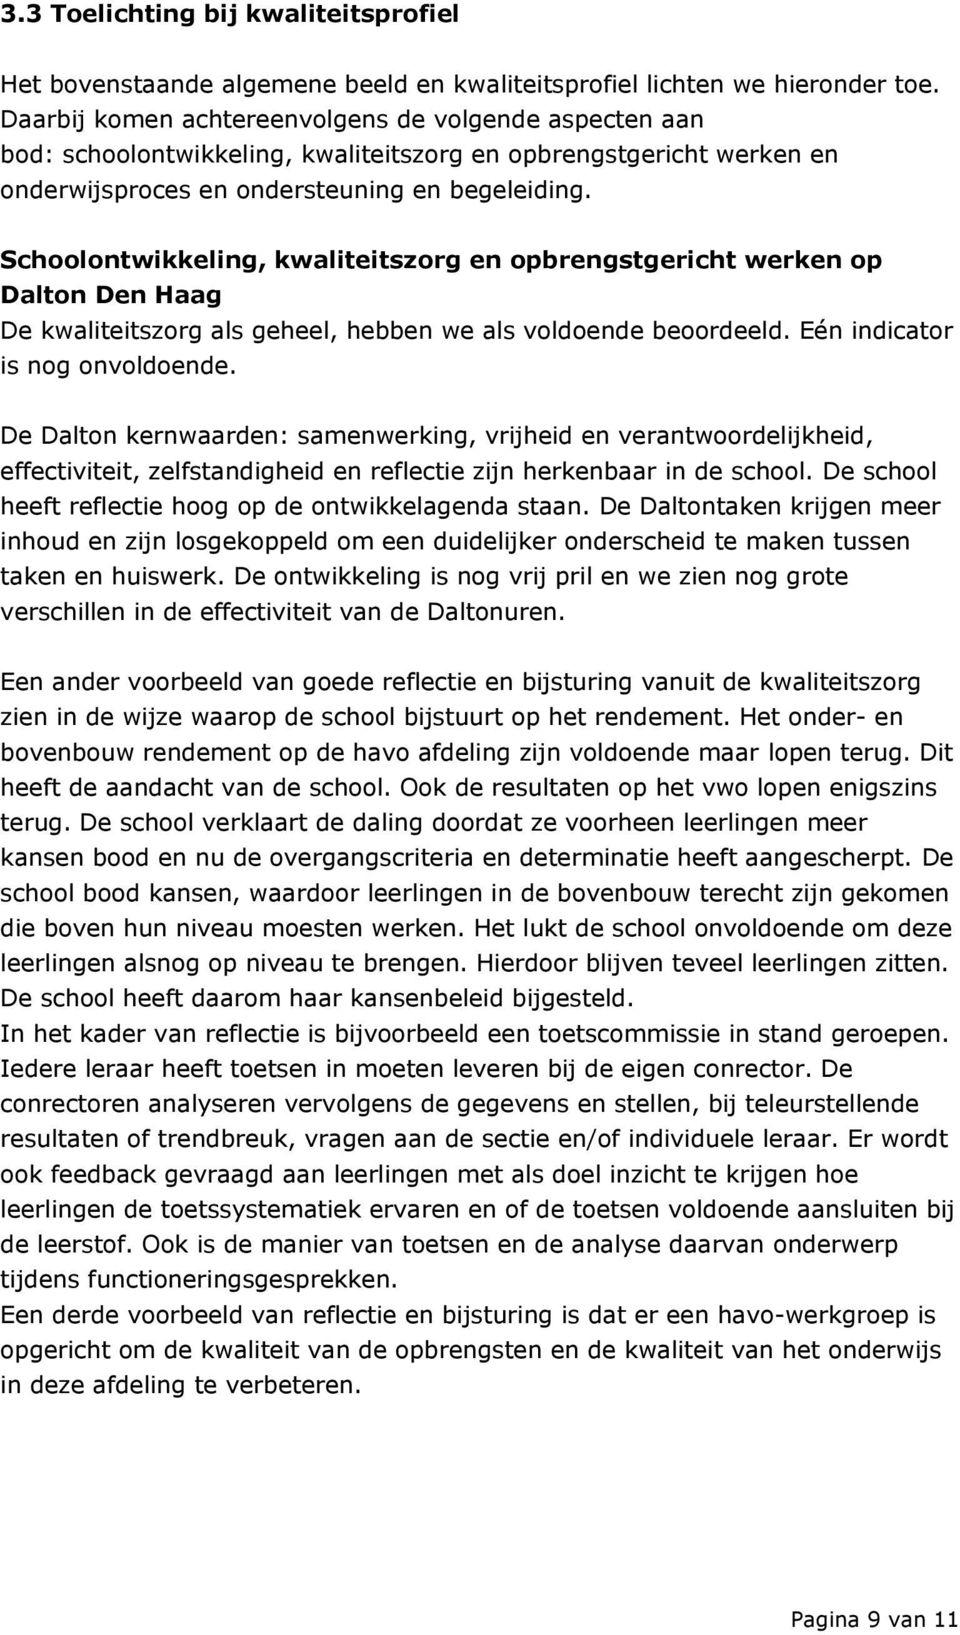 Schoolontwikkeling, kwaliteitszorg en opbrengstgericht werken op Dalton Den Haag De kwaliteitszorg als geheel, hebben we als voldoende beoordeeld. Eén indicator is nog onvoldoende.